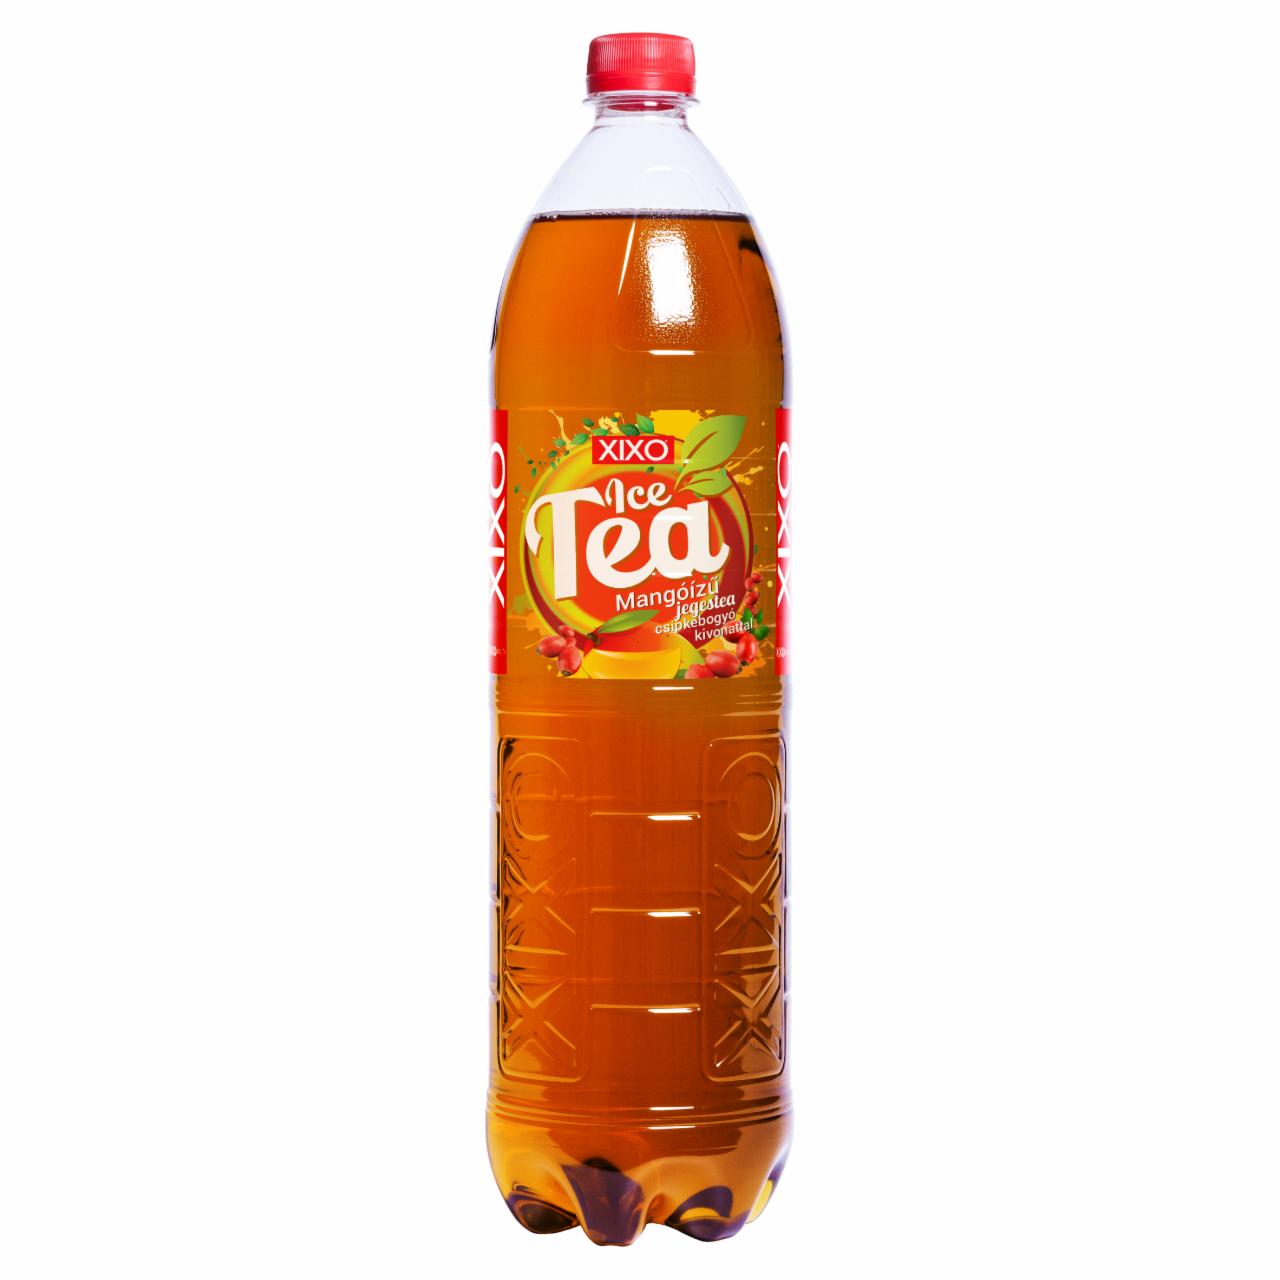 Képek - XIXO Ice Tea mangóízű jegestea csipkebogyó kivonattal 1,5 l